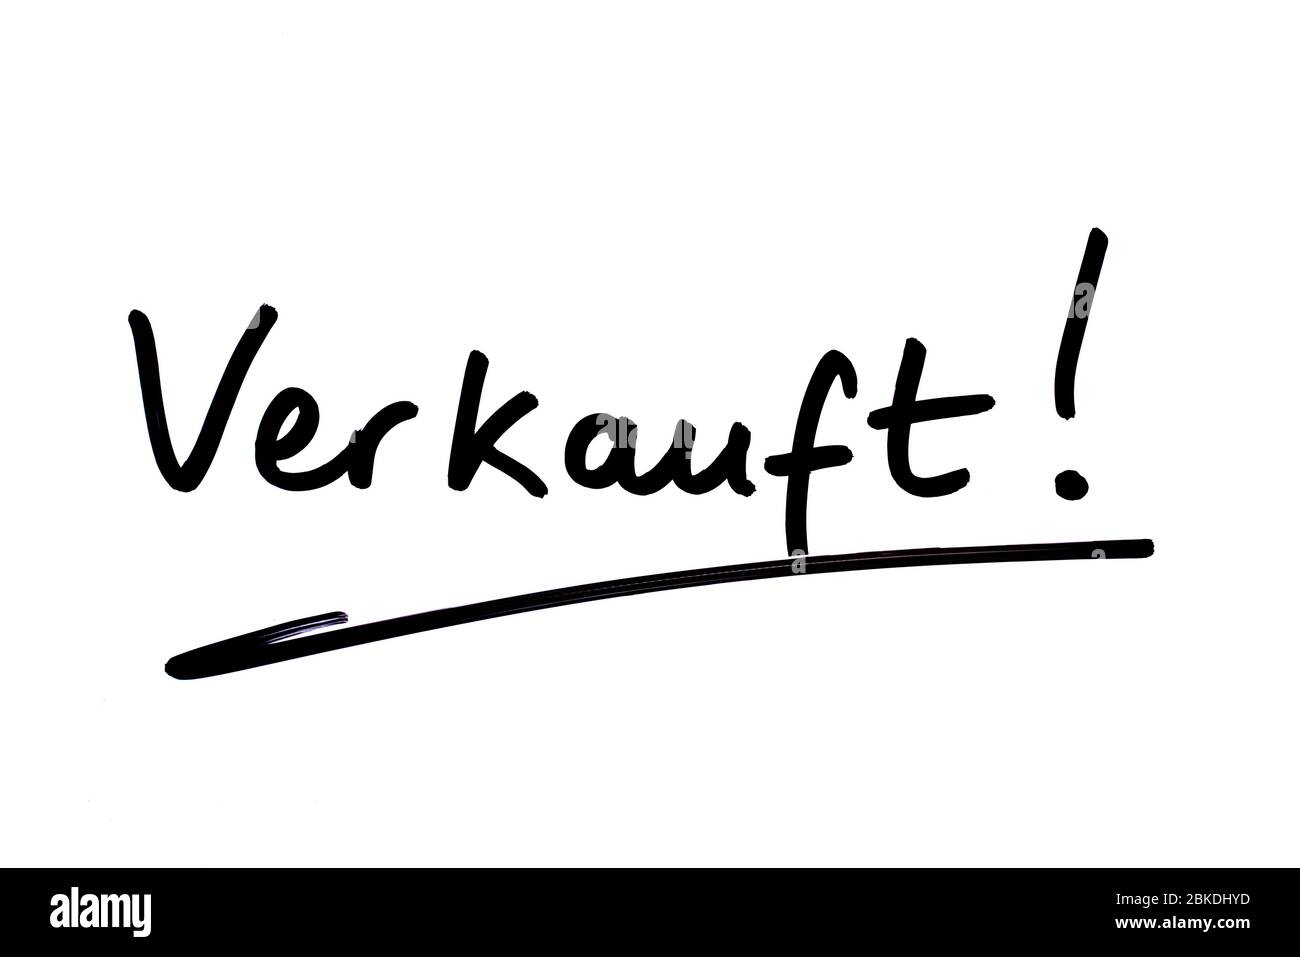 Das Wort Verkauft! - Bedeutung verkauft! In deutscher Sprache, handschriftlich auf weißem Hintergrund. Stockfoto